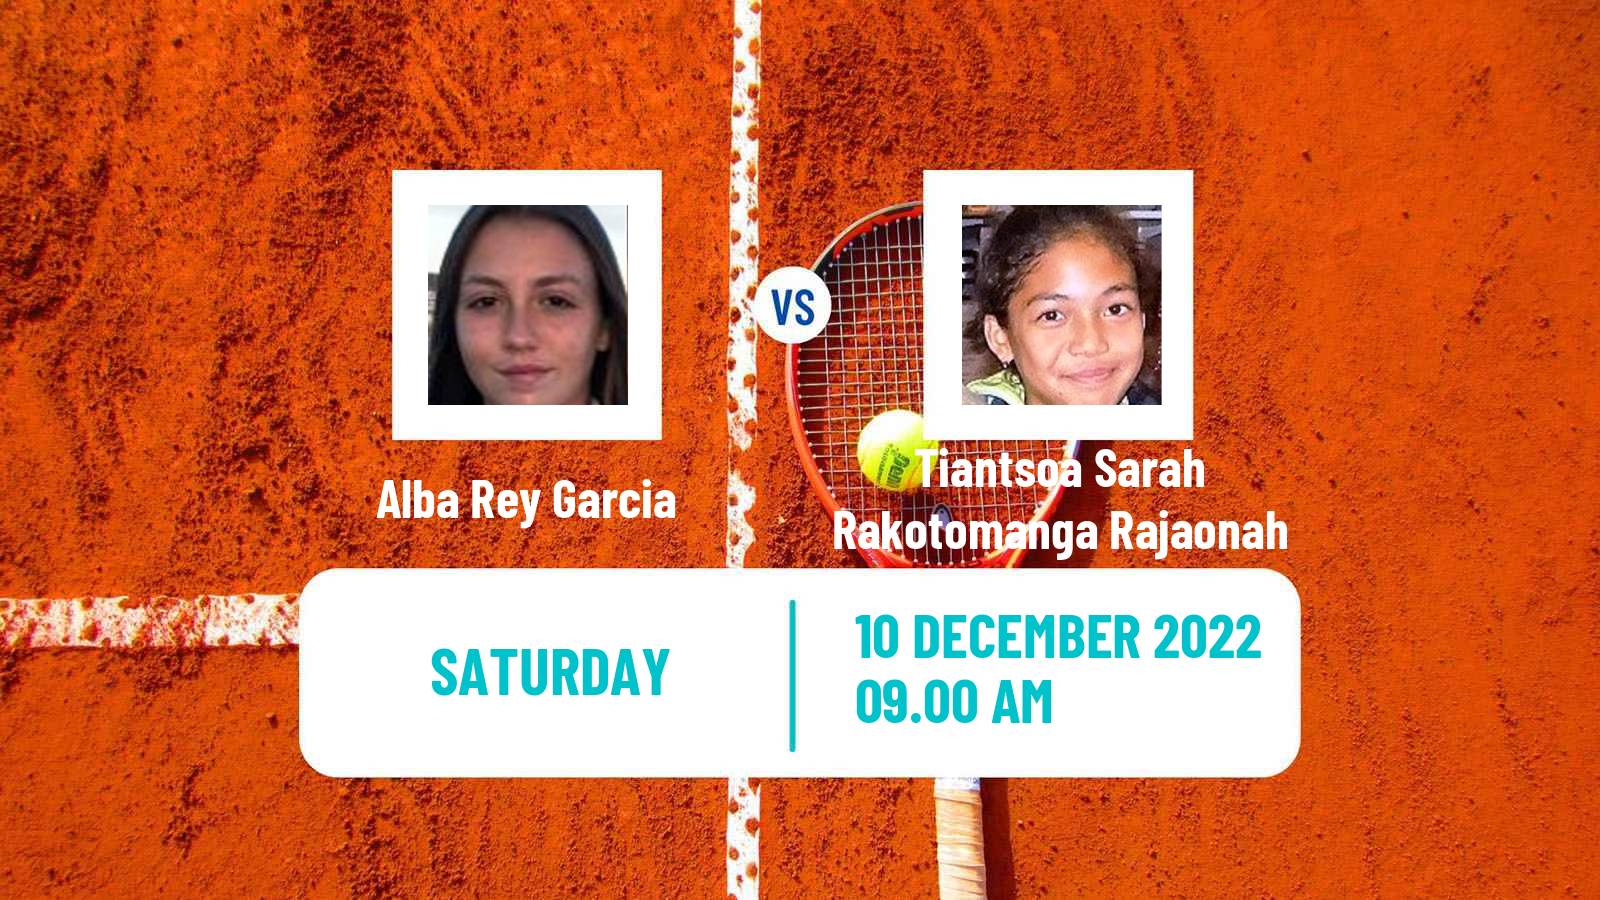 Tennis ITF Tournaments Alba Rey Garcia - Tiantsoa Sarah Rakotomanga Rajaonah